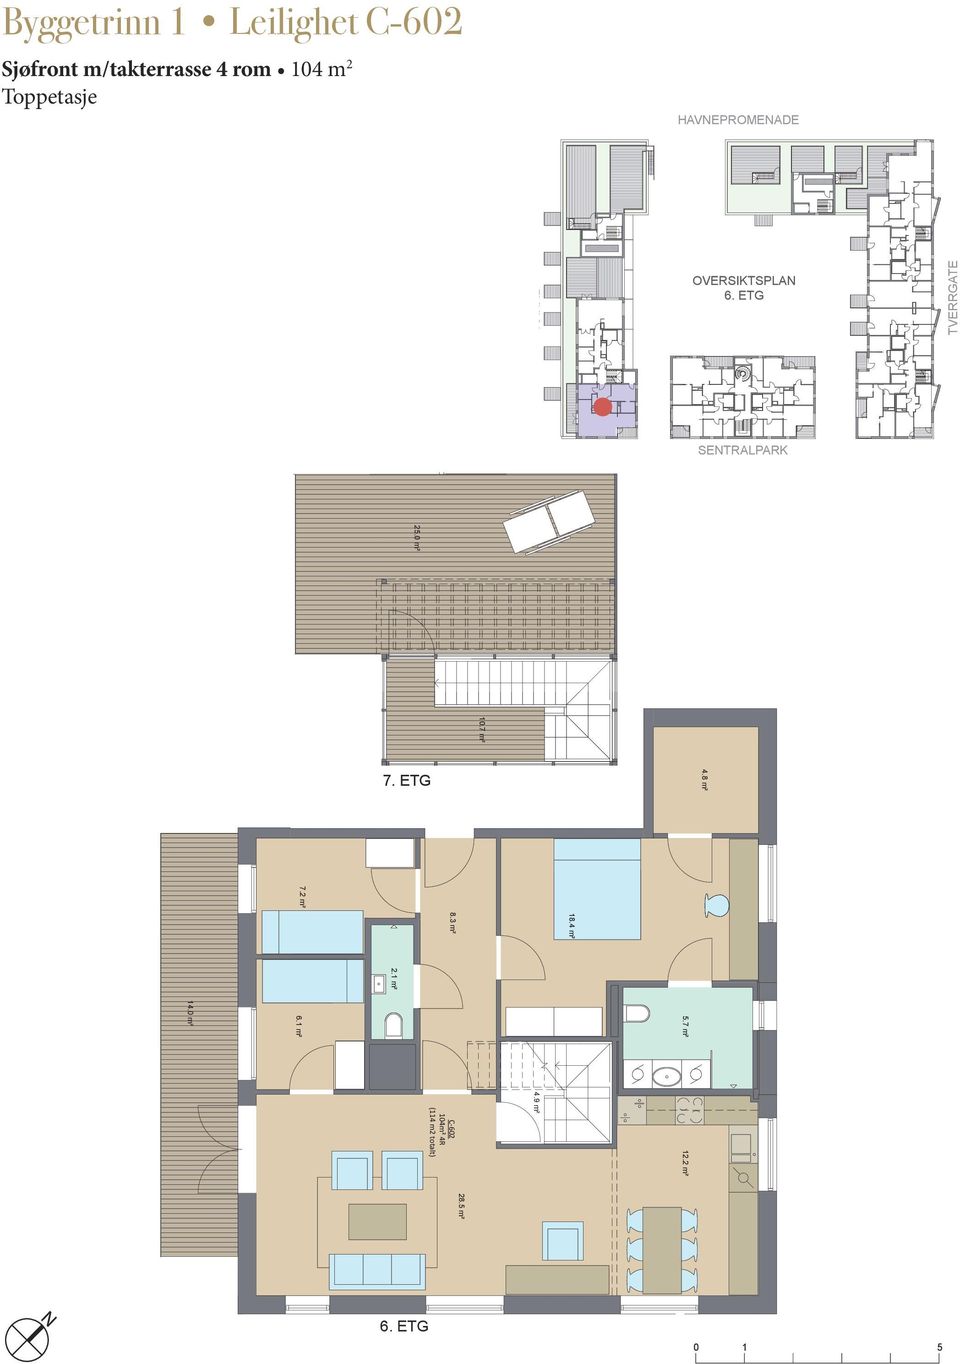 ETG 6. m² 4.8 m² 4.8 m² 7.2 m² 8.4 m² 8.3 m² 7.2 m².7 m² 8.4 m².7 m² 2. m² 4. m² 8.3 m² 6. m² 2. m² 4. m².7 m² 6.